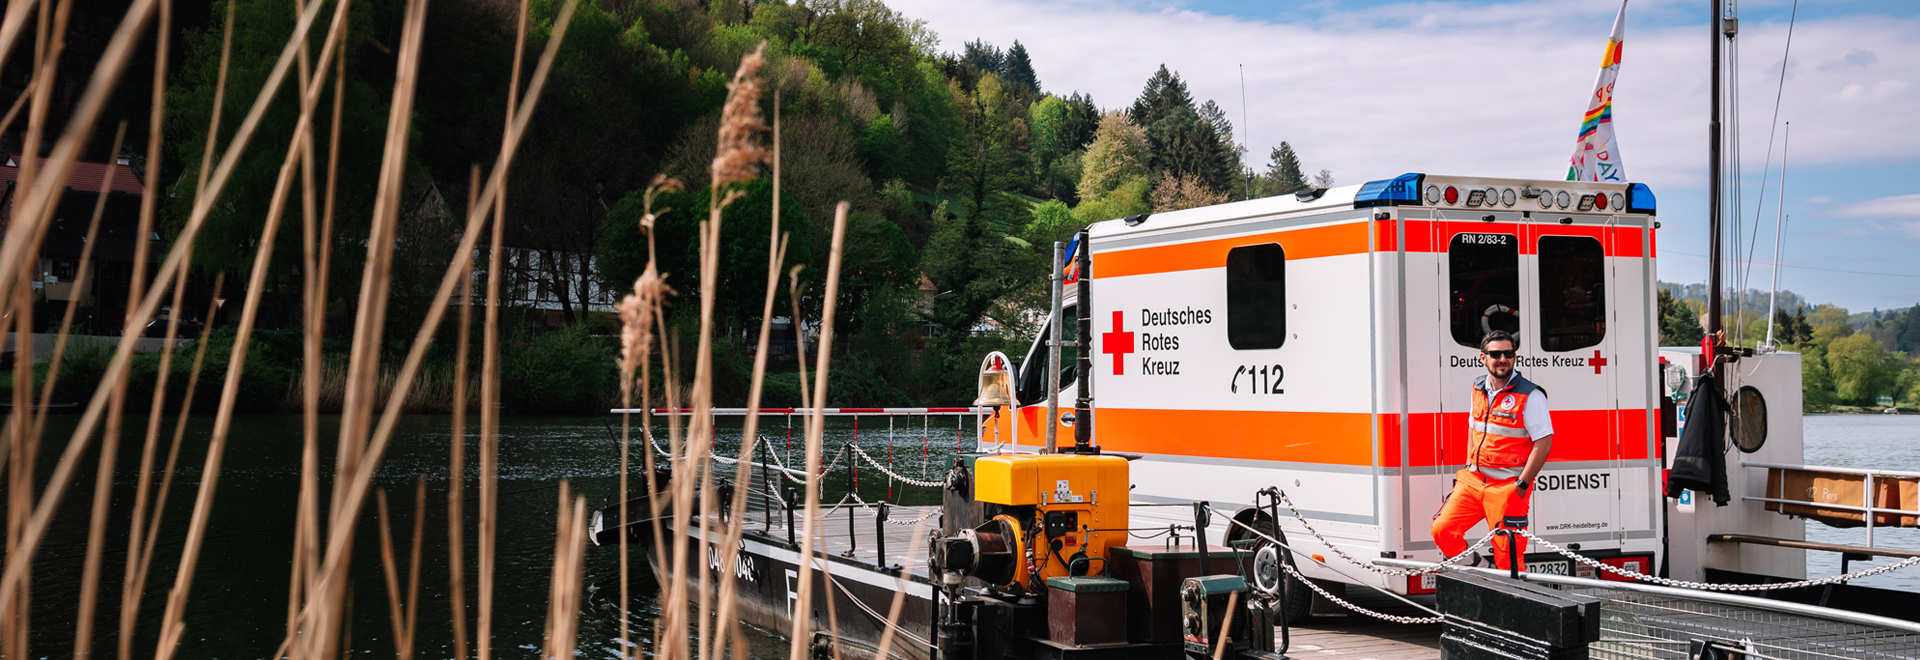 Rettungssanitäter neben einem Rettungswagen am Neckar-Ufer